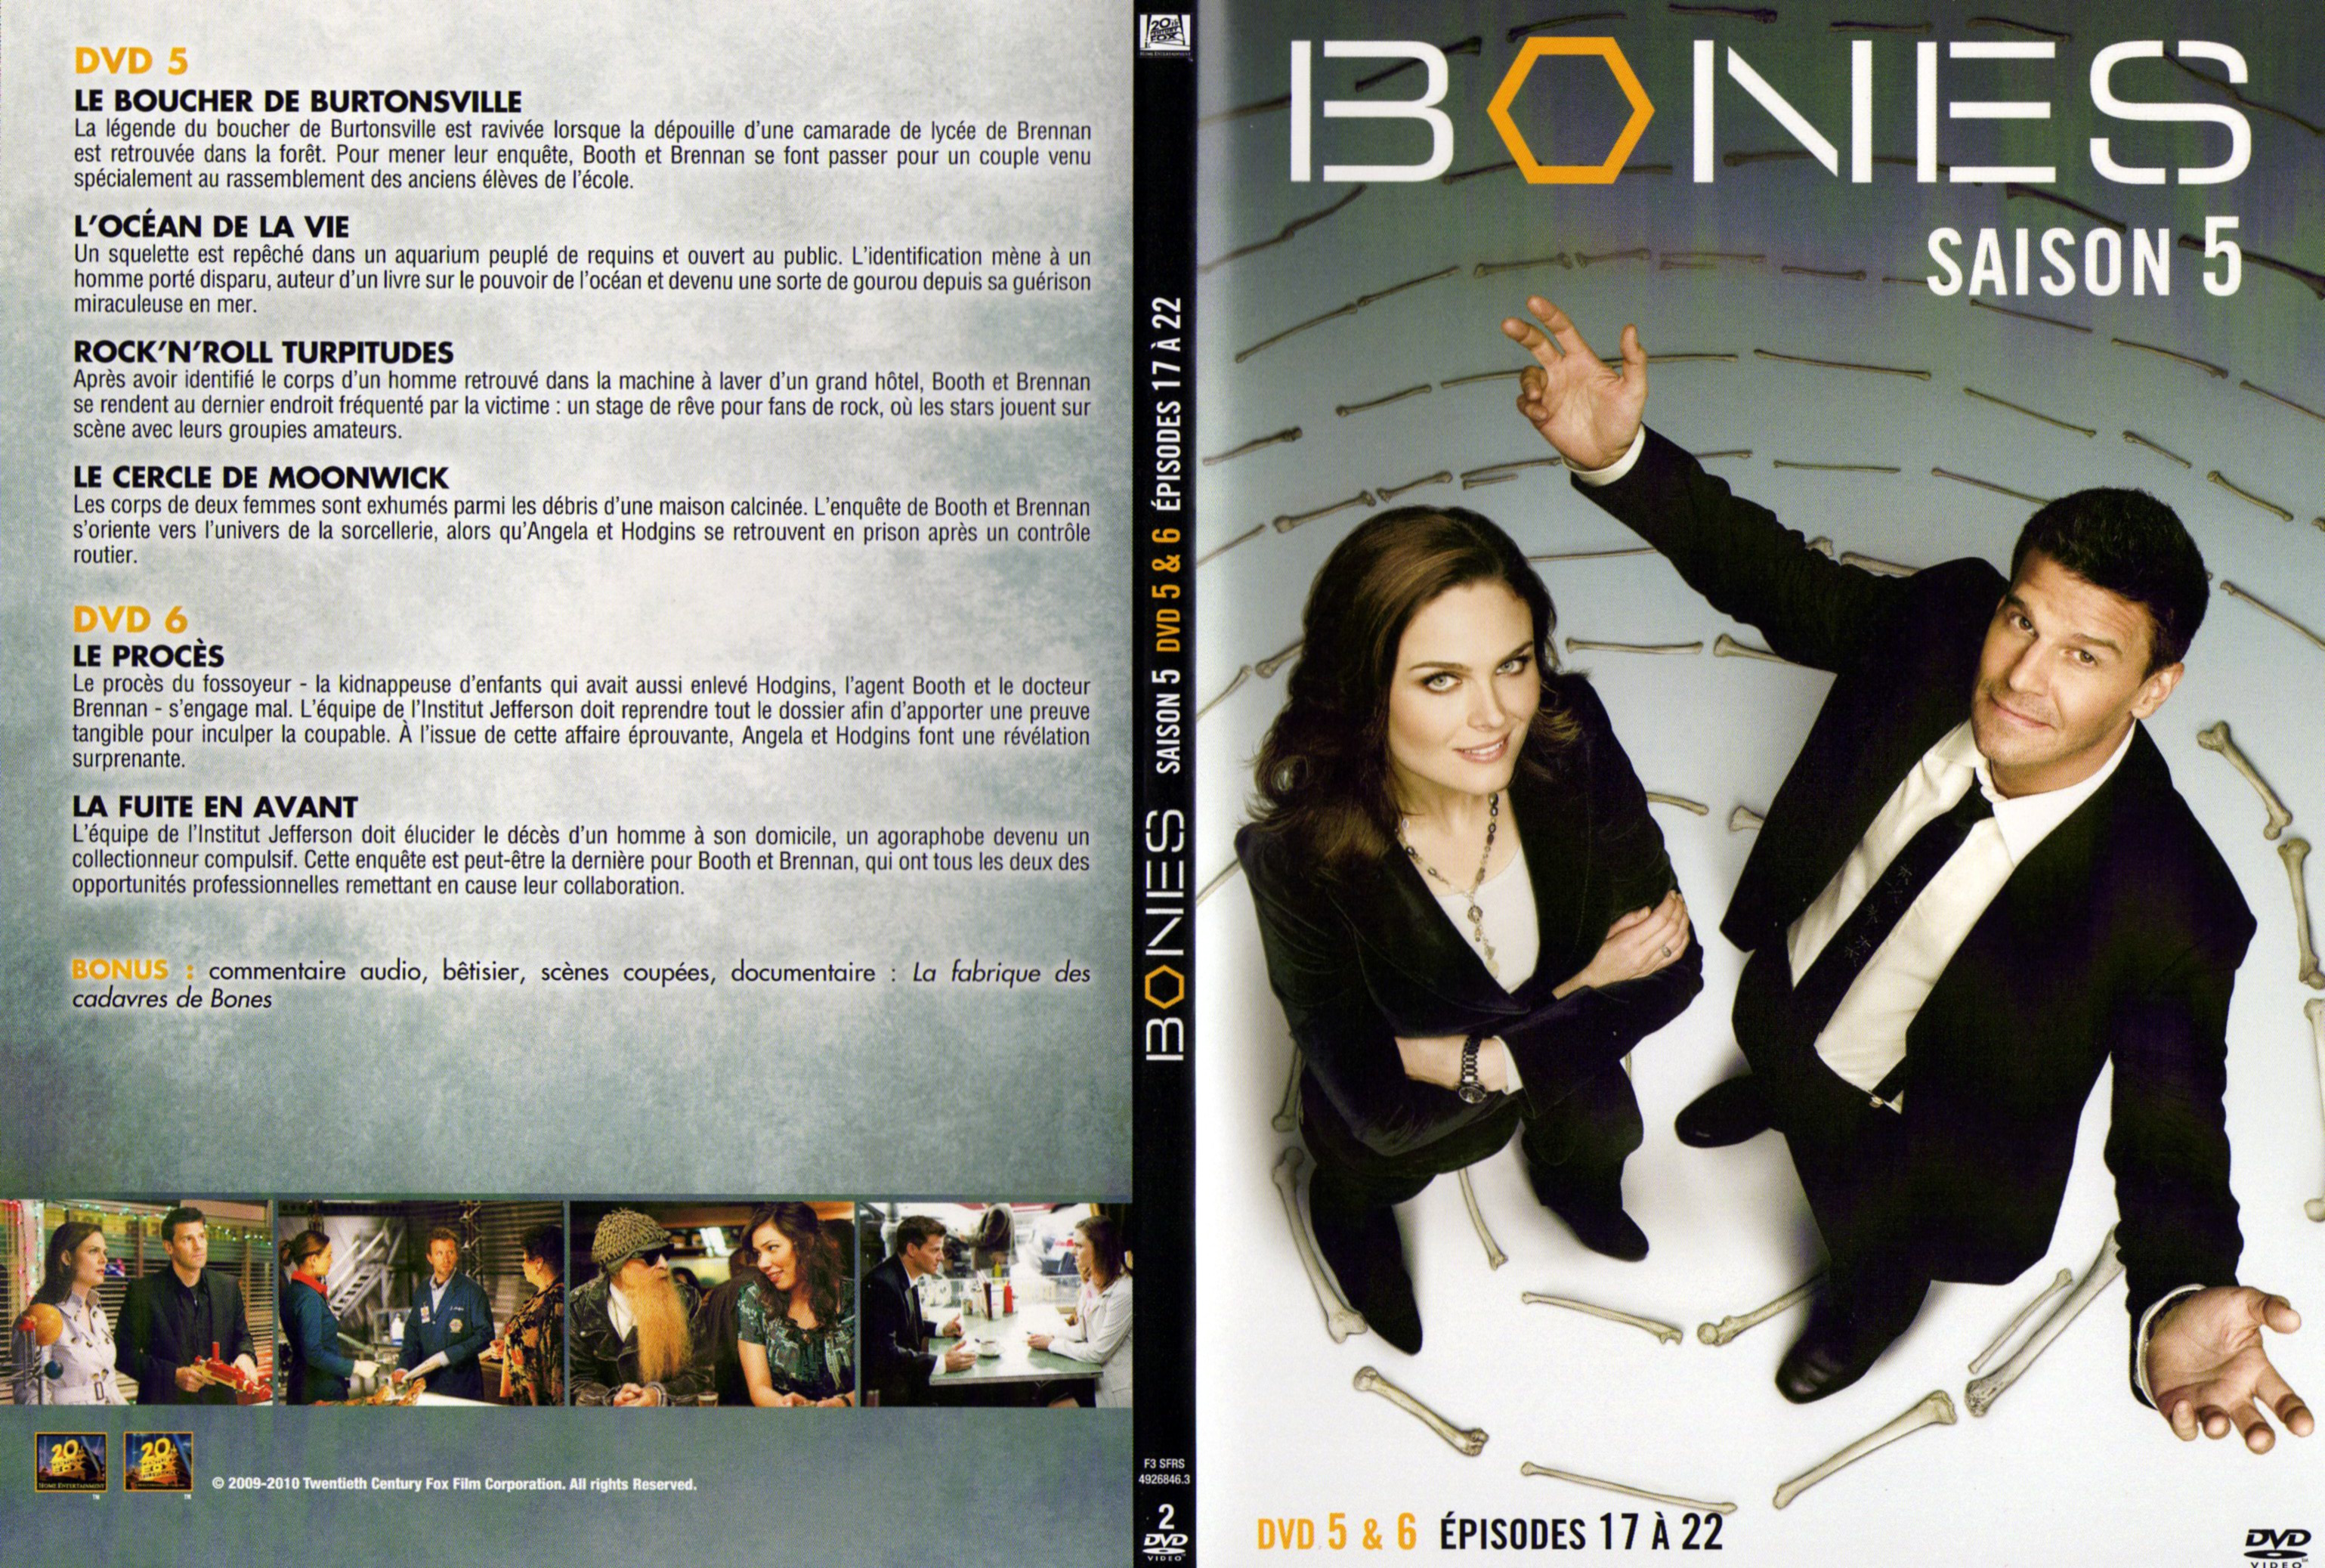 Jaquette DVD Bones Saison 5 DVD 3